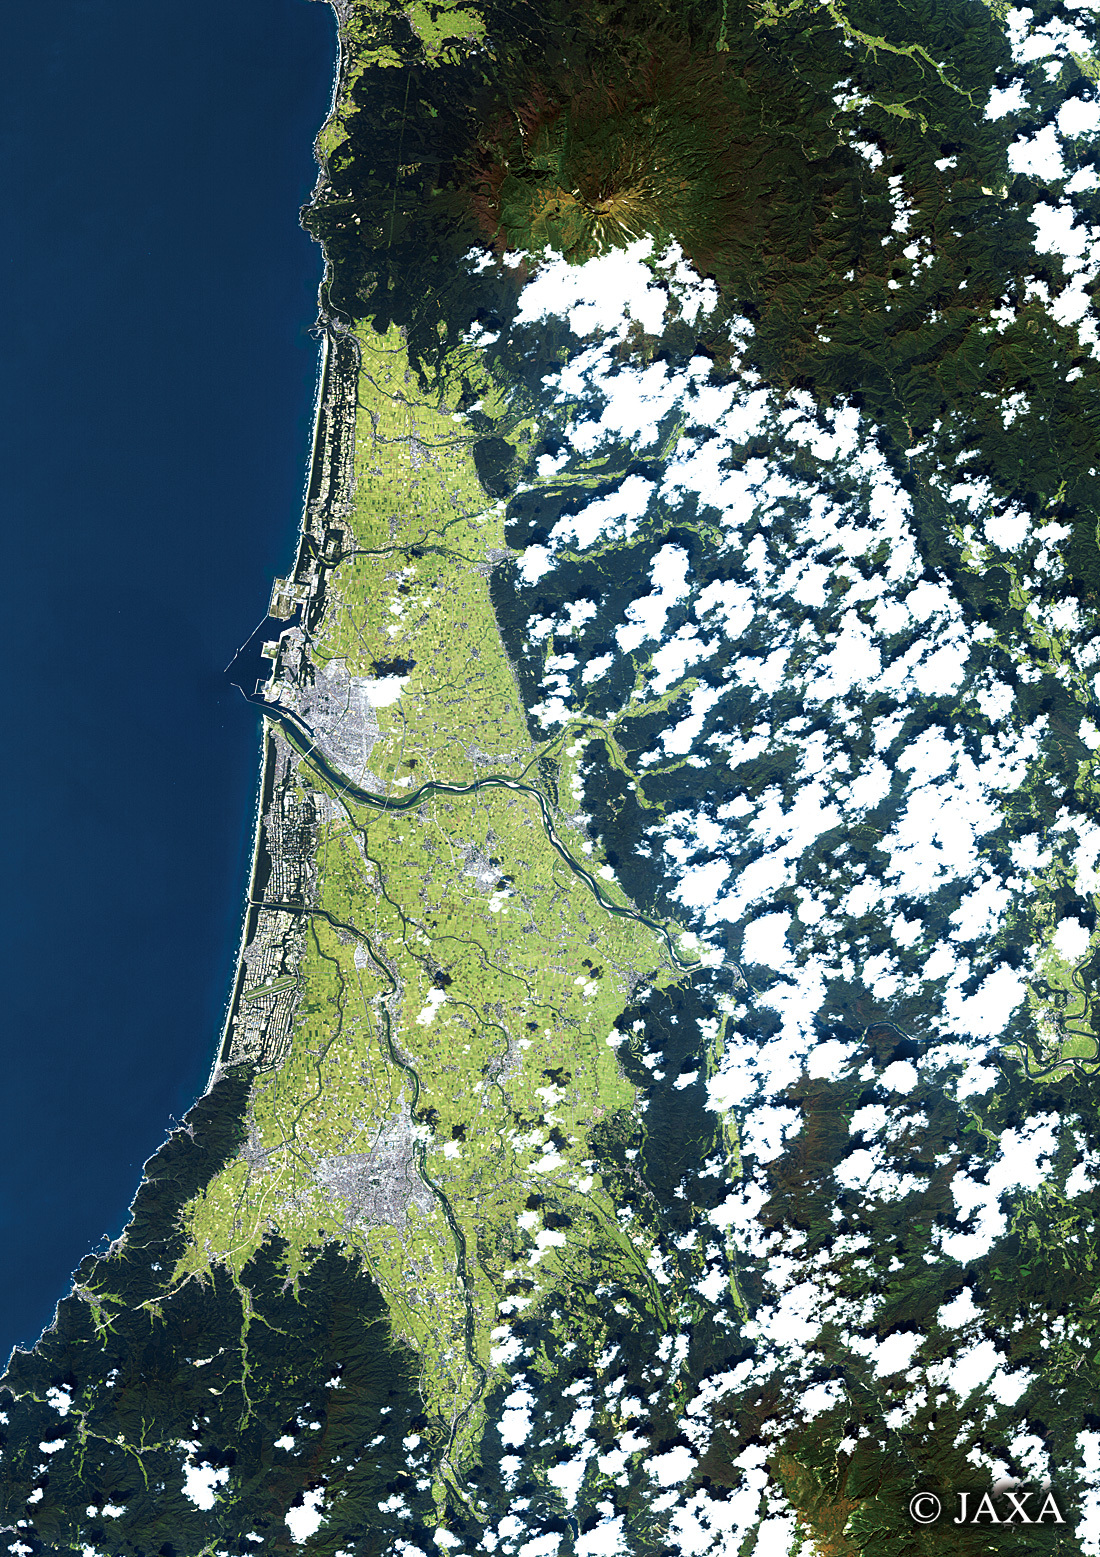 だいちから見た日本の都市 庄内平野:衛星画像